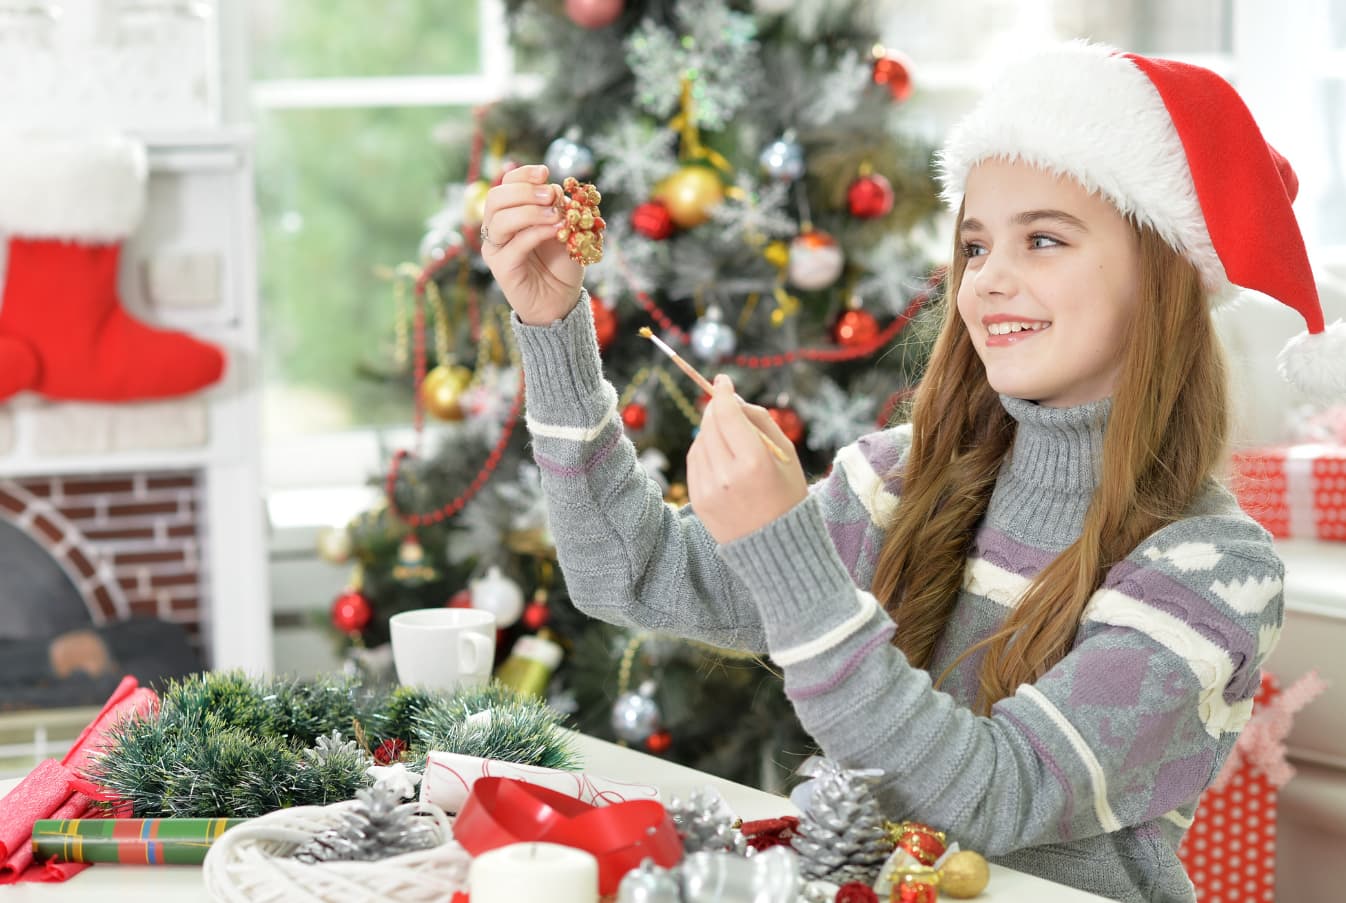 Aniołki, bombki, świeczniki – ozdoby świąteczne, które zrobisz z dziećmi